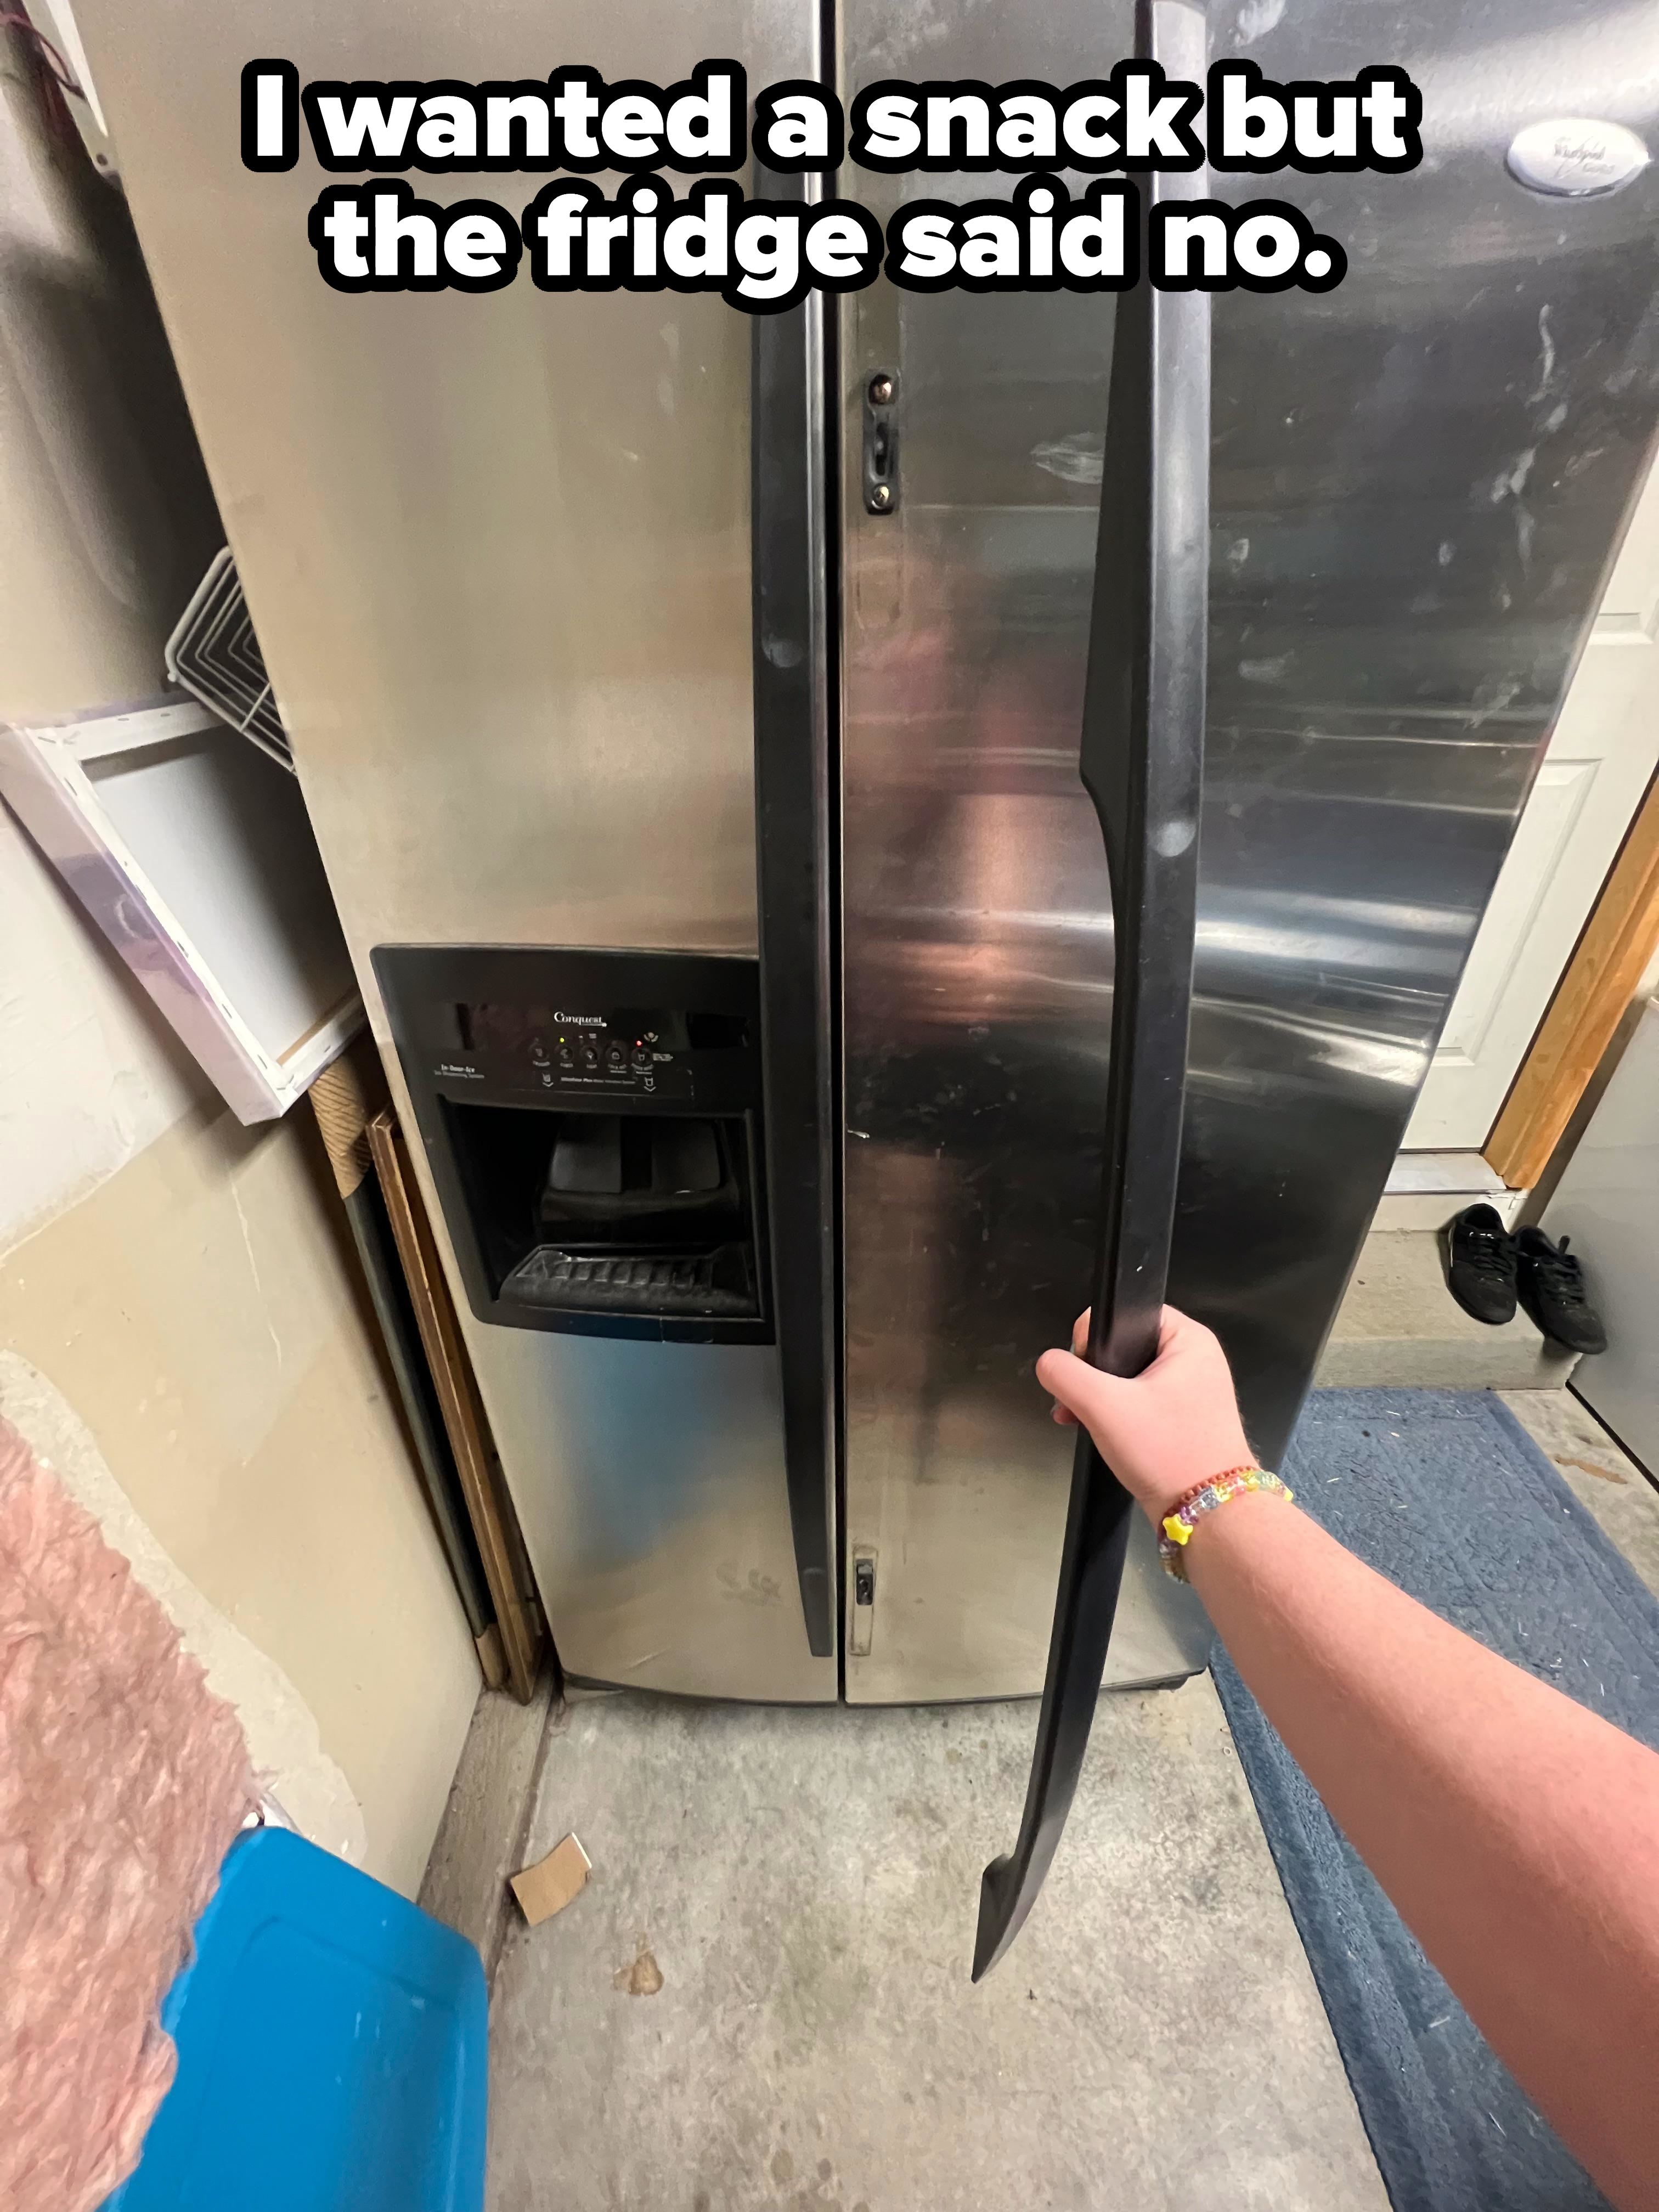 A broken fridge handle